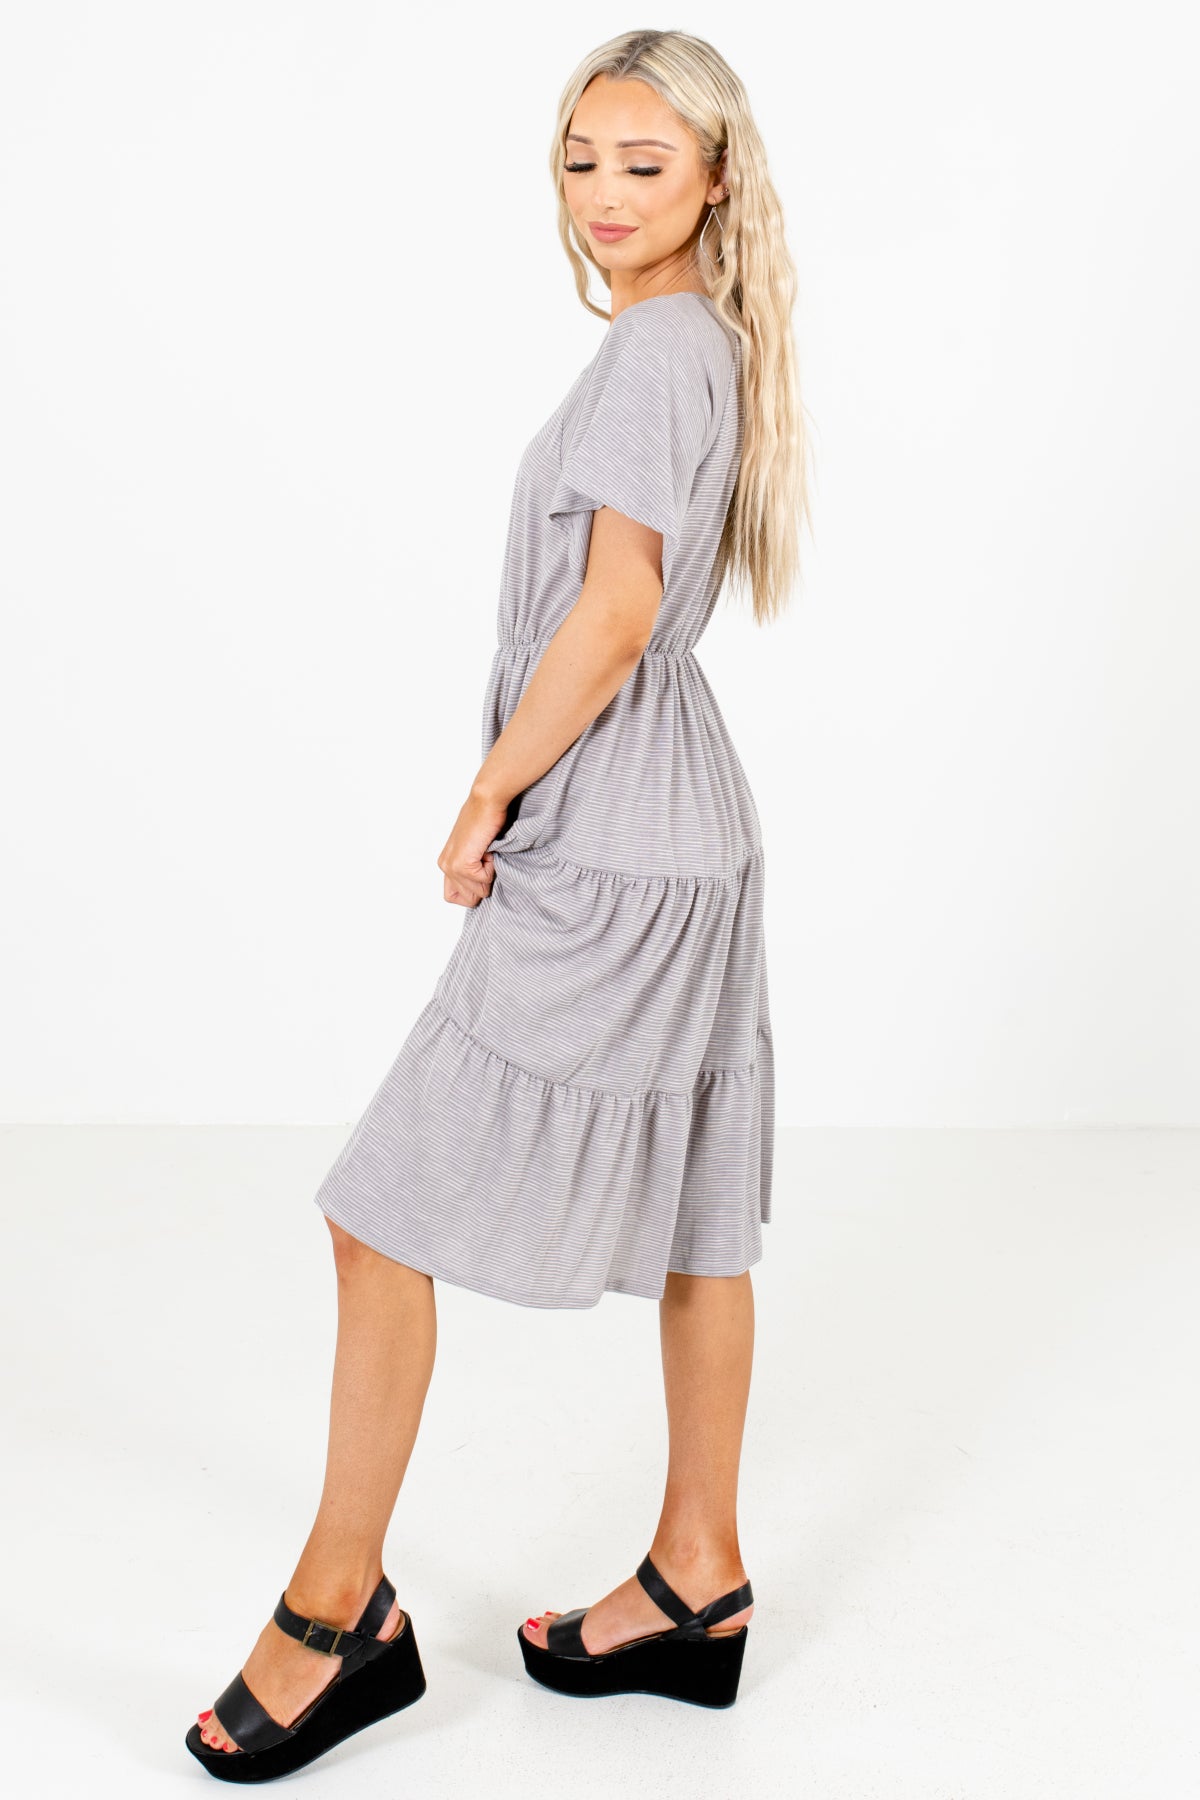 Gray Round Neckline Boutique Knee-Length Dresses for Women